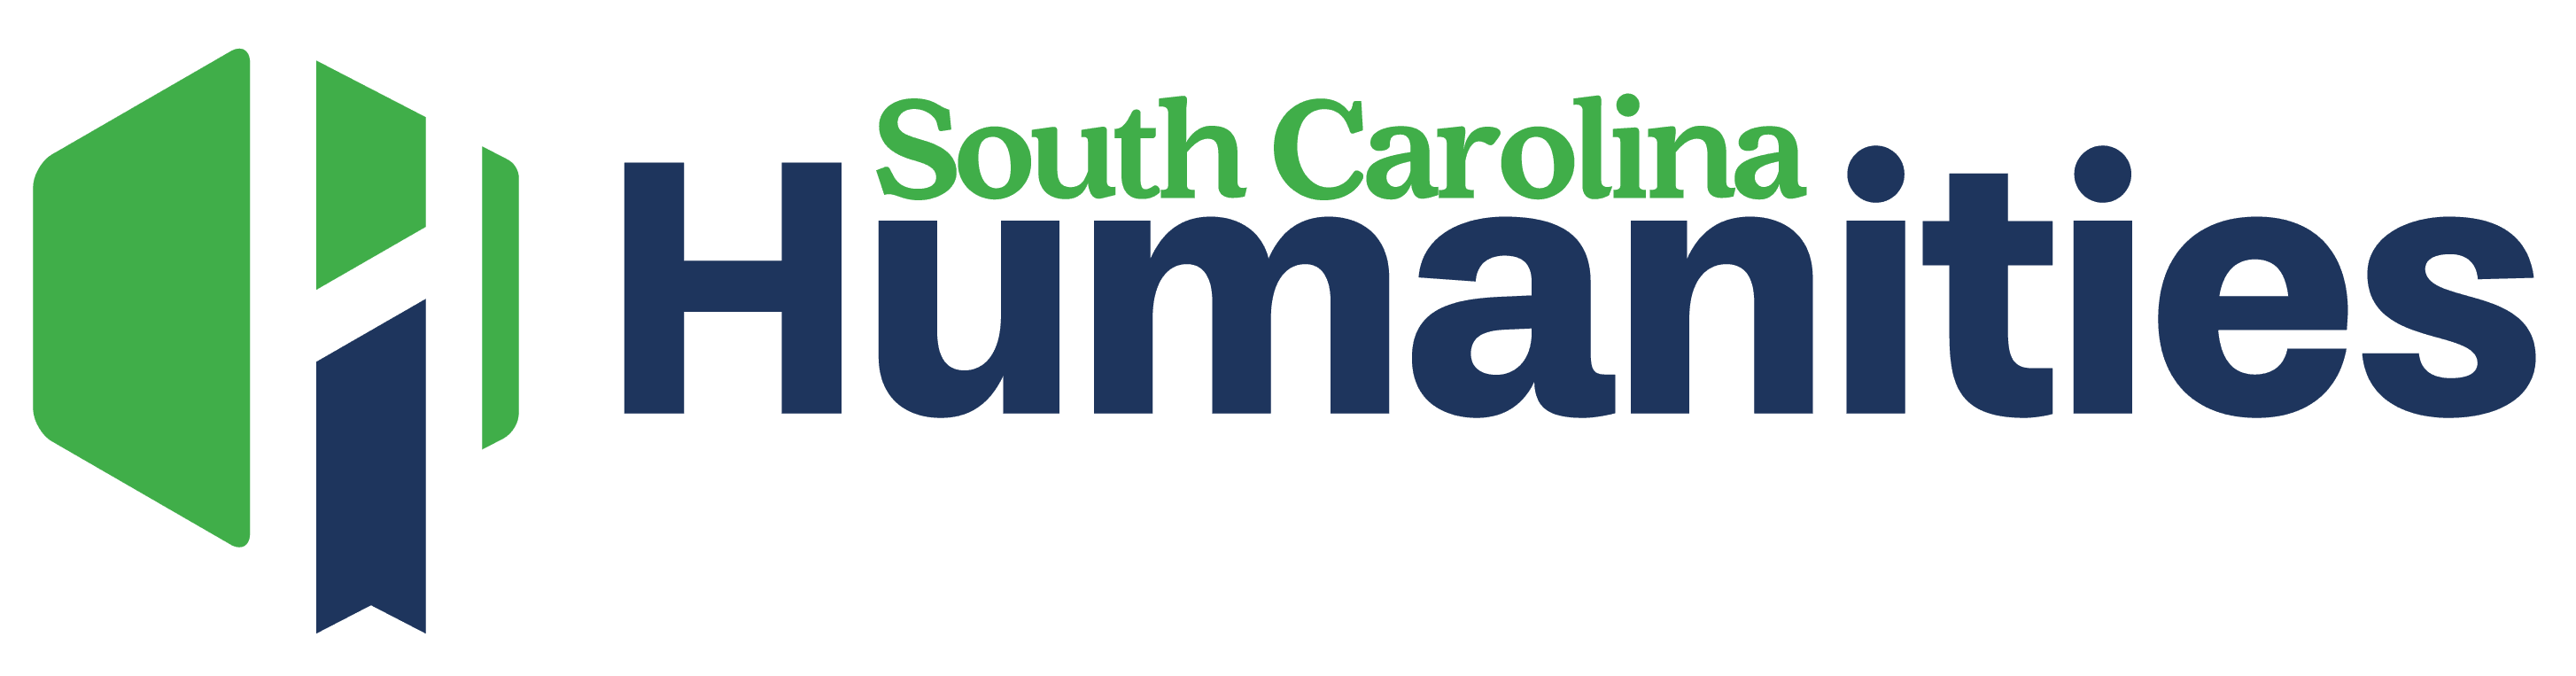 South Carolina Humanities